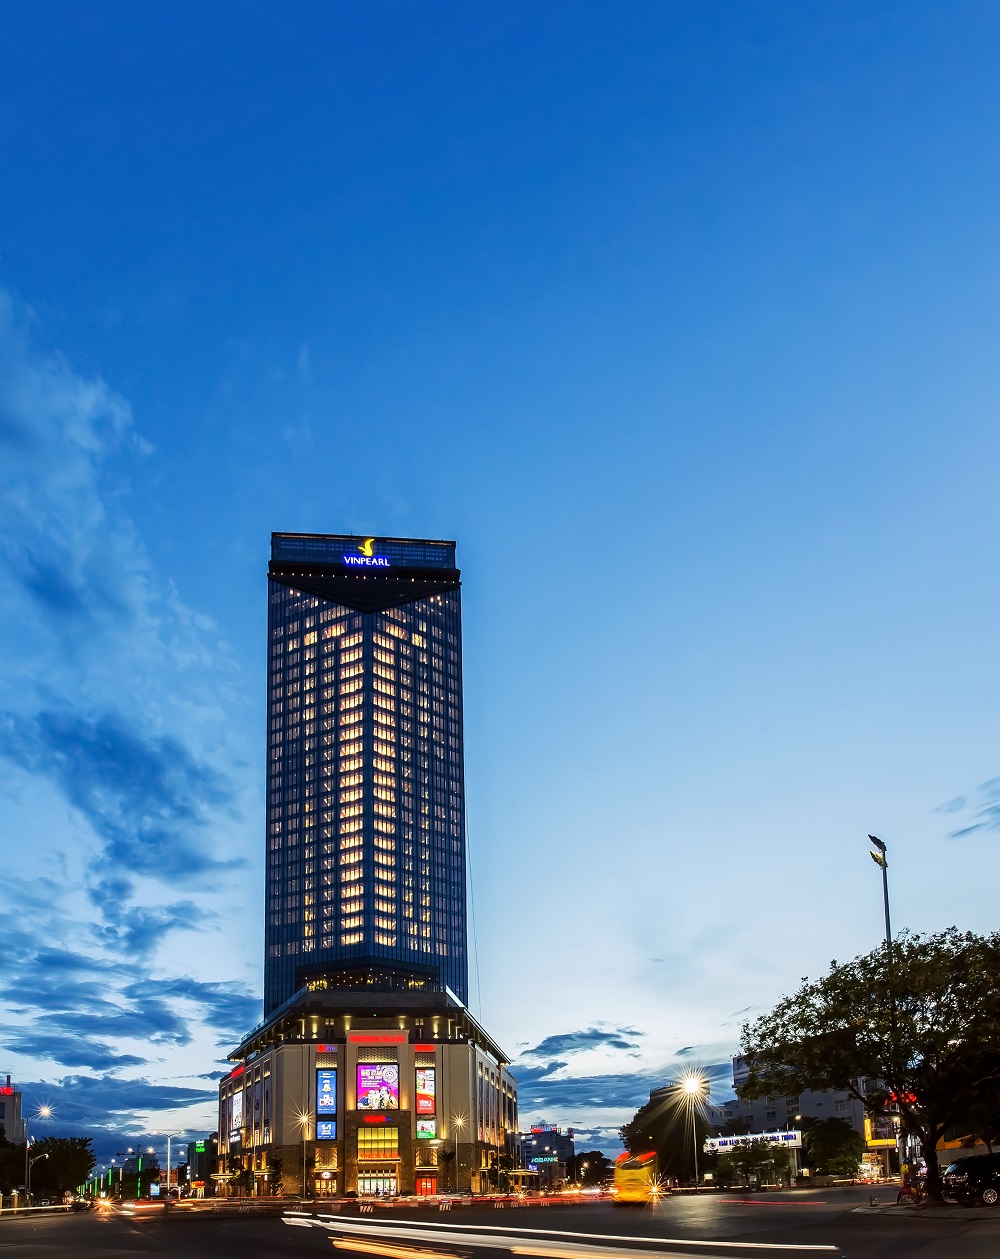 Vinpearl Hotel Huế cao 33 tầng toạ lạc tại trung tâm ngã 6 huyết mạch của Cố đô với kiến trúc tháp hình chữ V hiện đại và sang trọng.